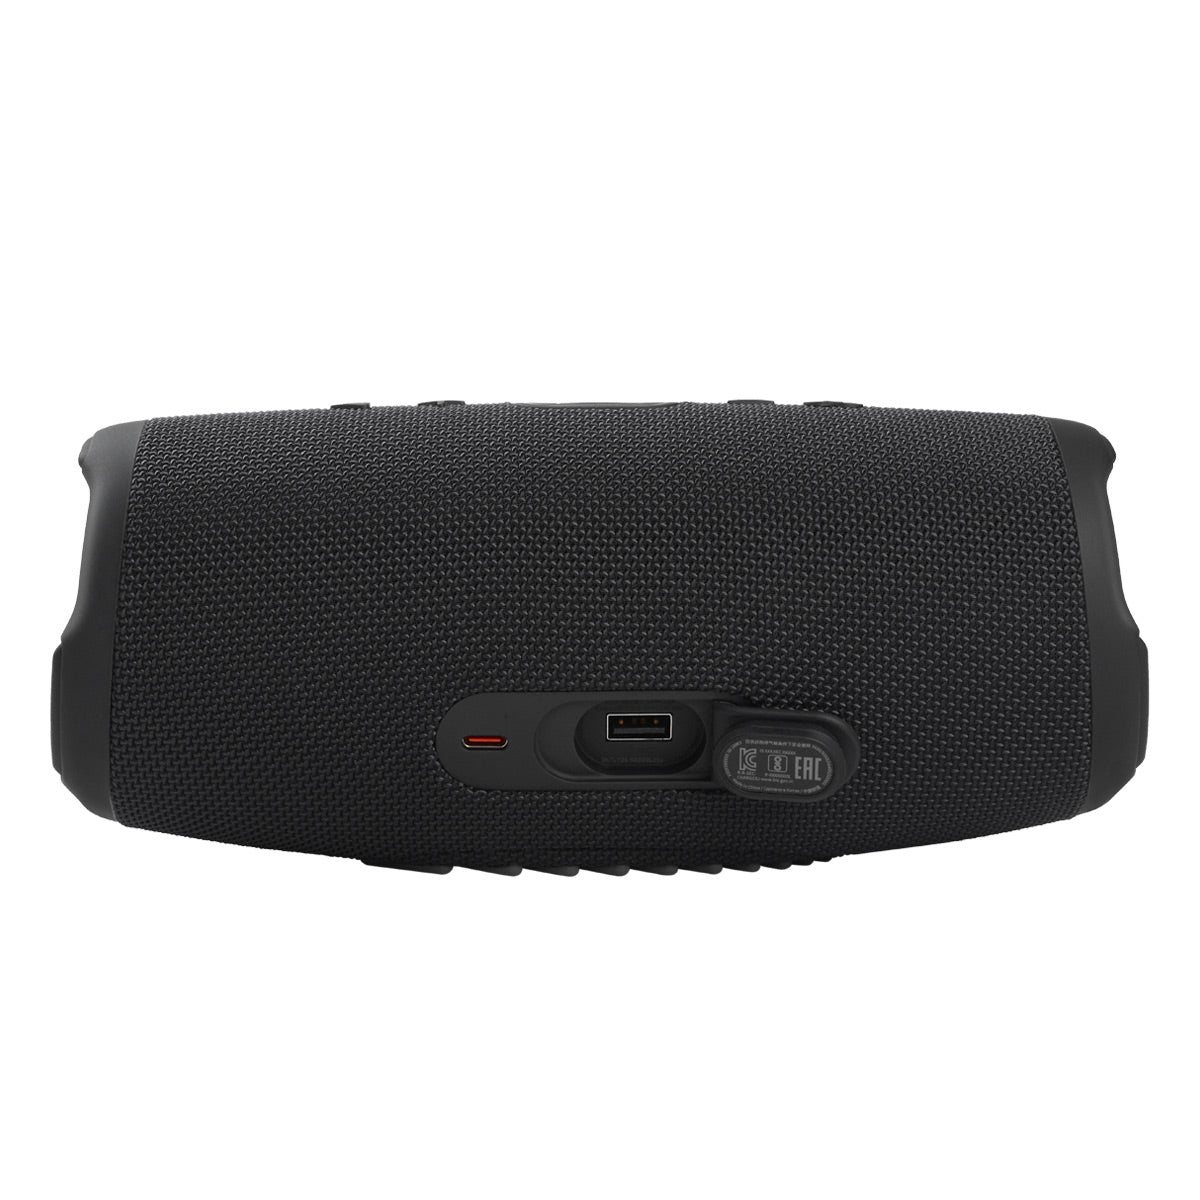 JBL Charge 5 Portable Waterproof Bluetooth Speaker with Powerbank (Black)